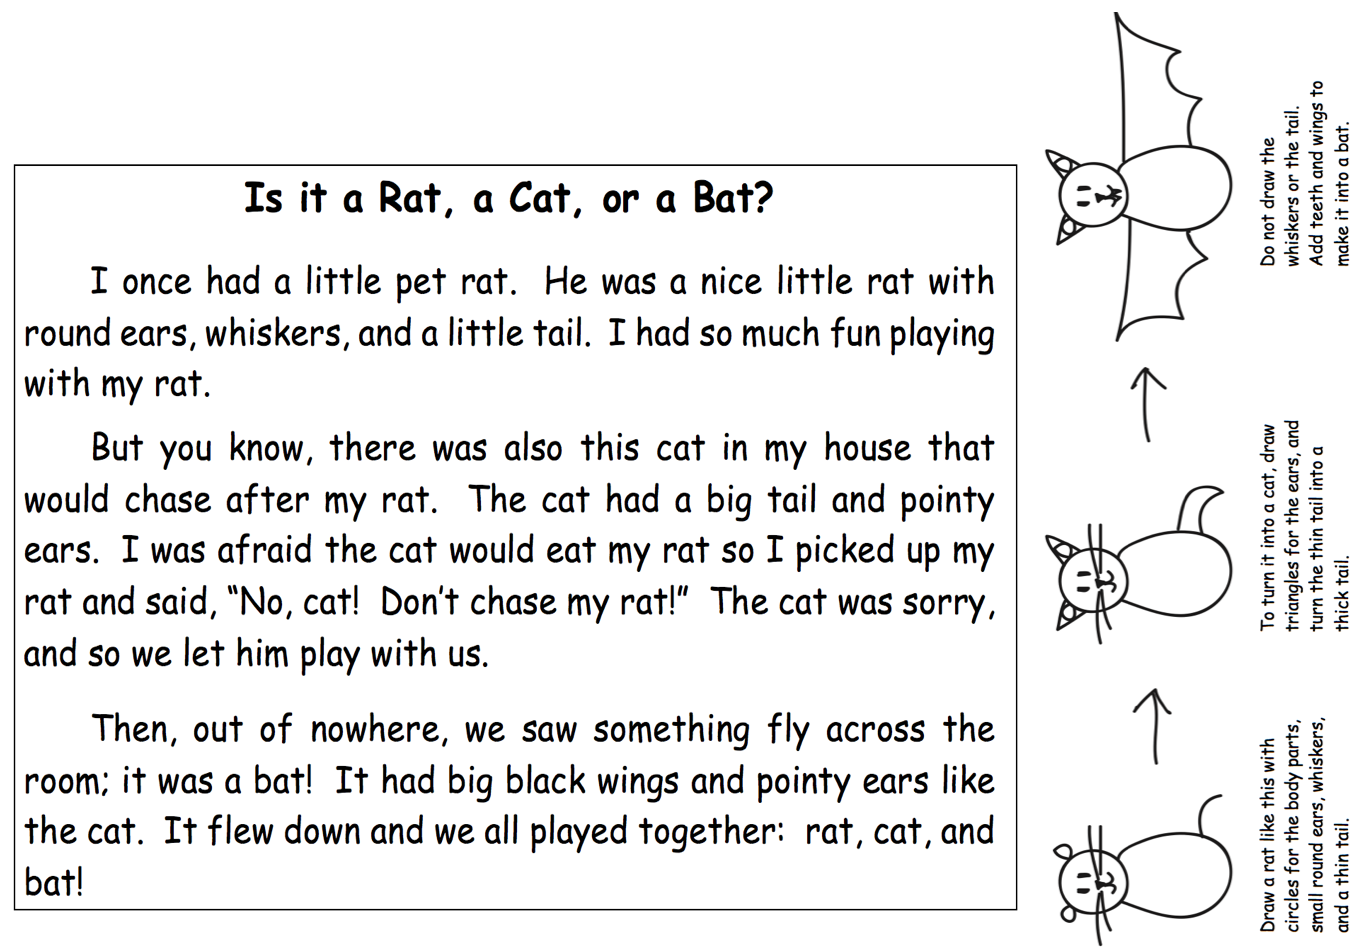 Cat-rat-bat